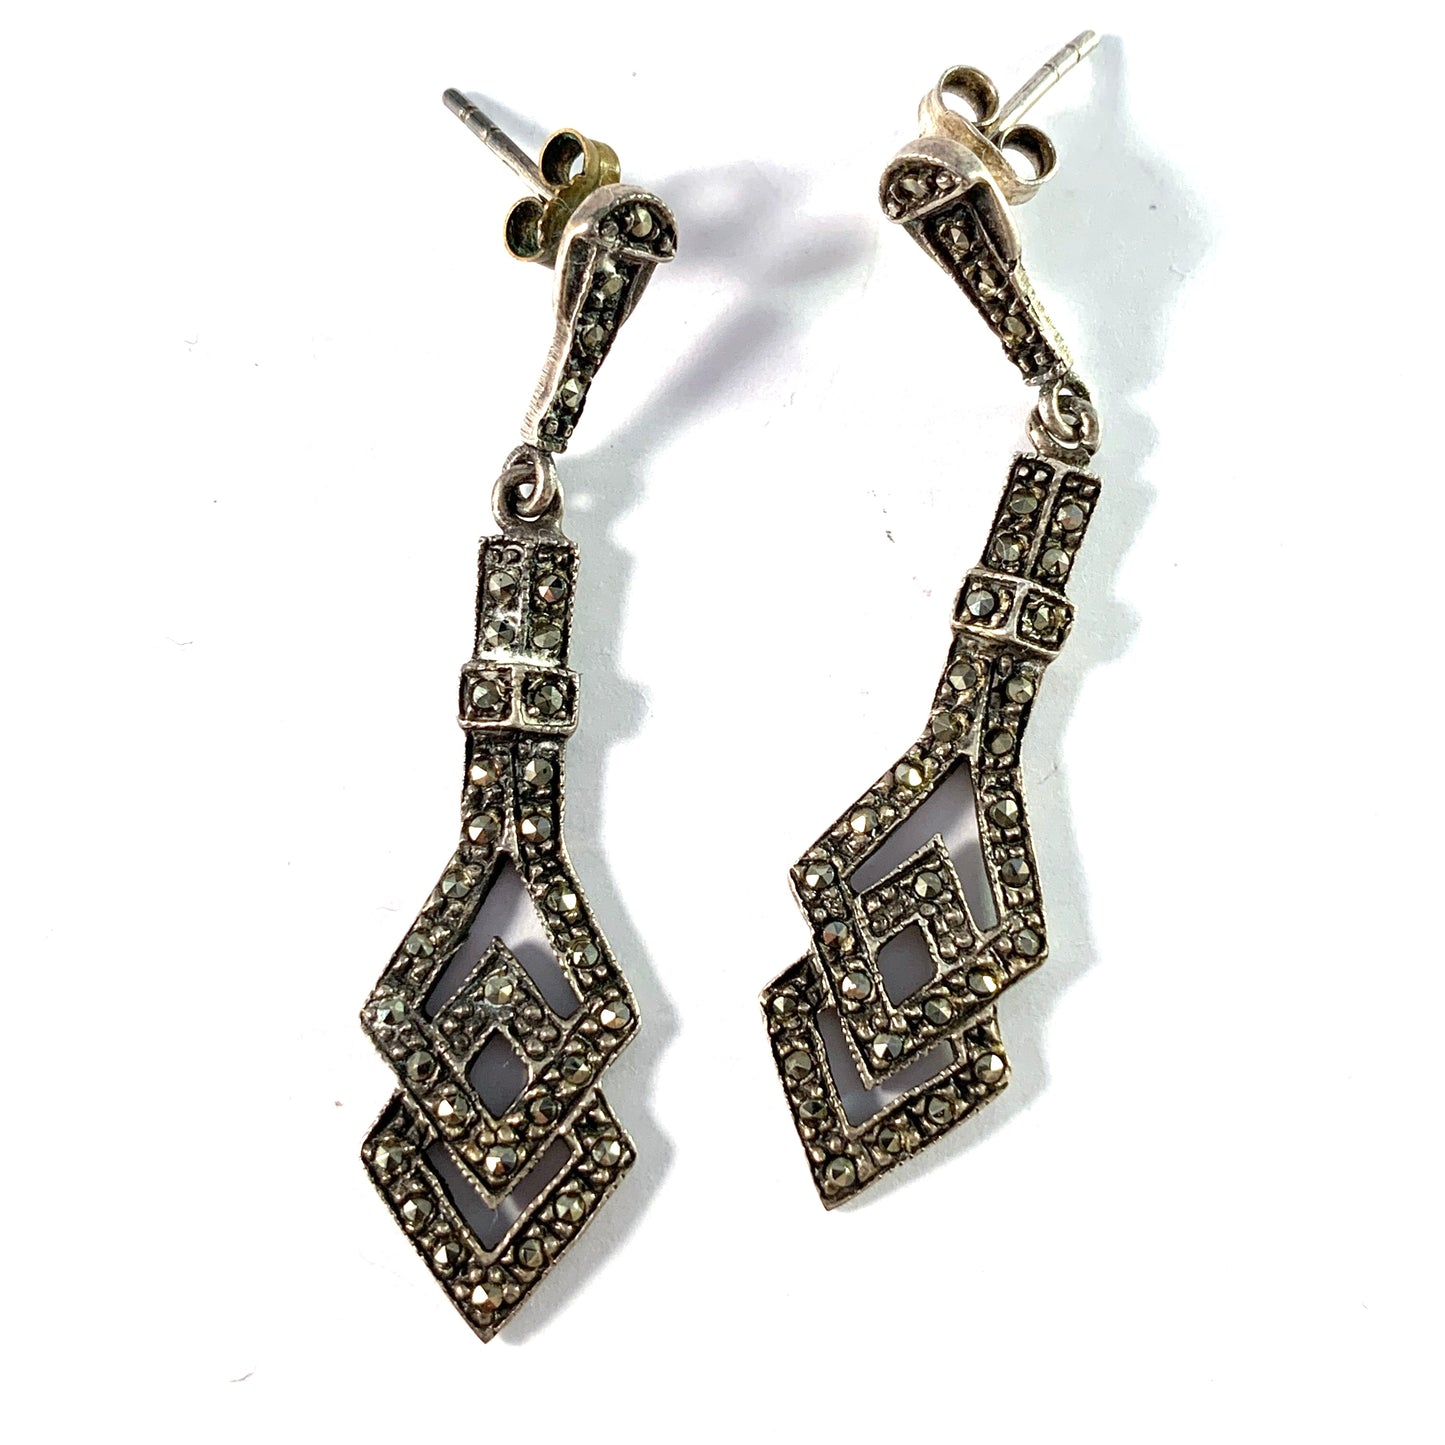 Art Deco, 1930s Sterling Silver Marcasite Earrings.